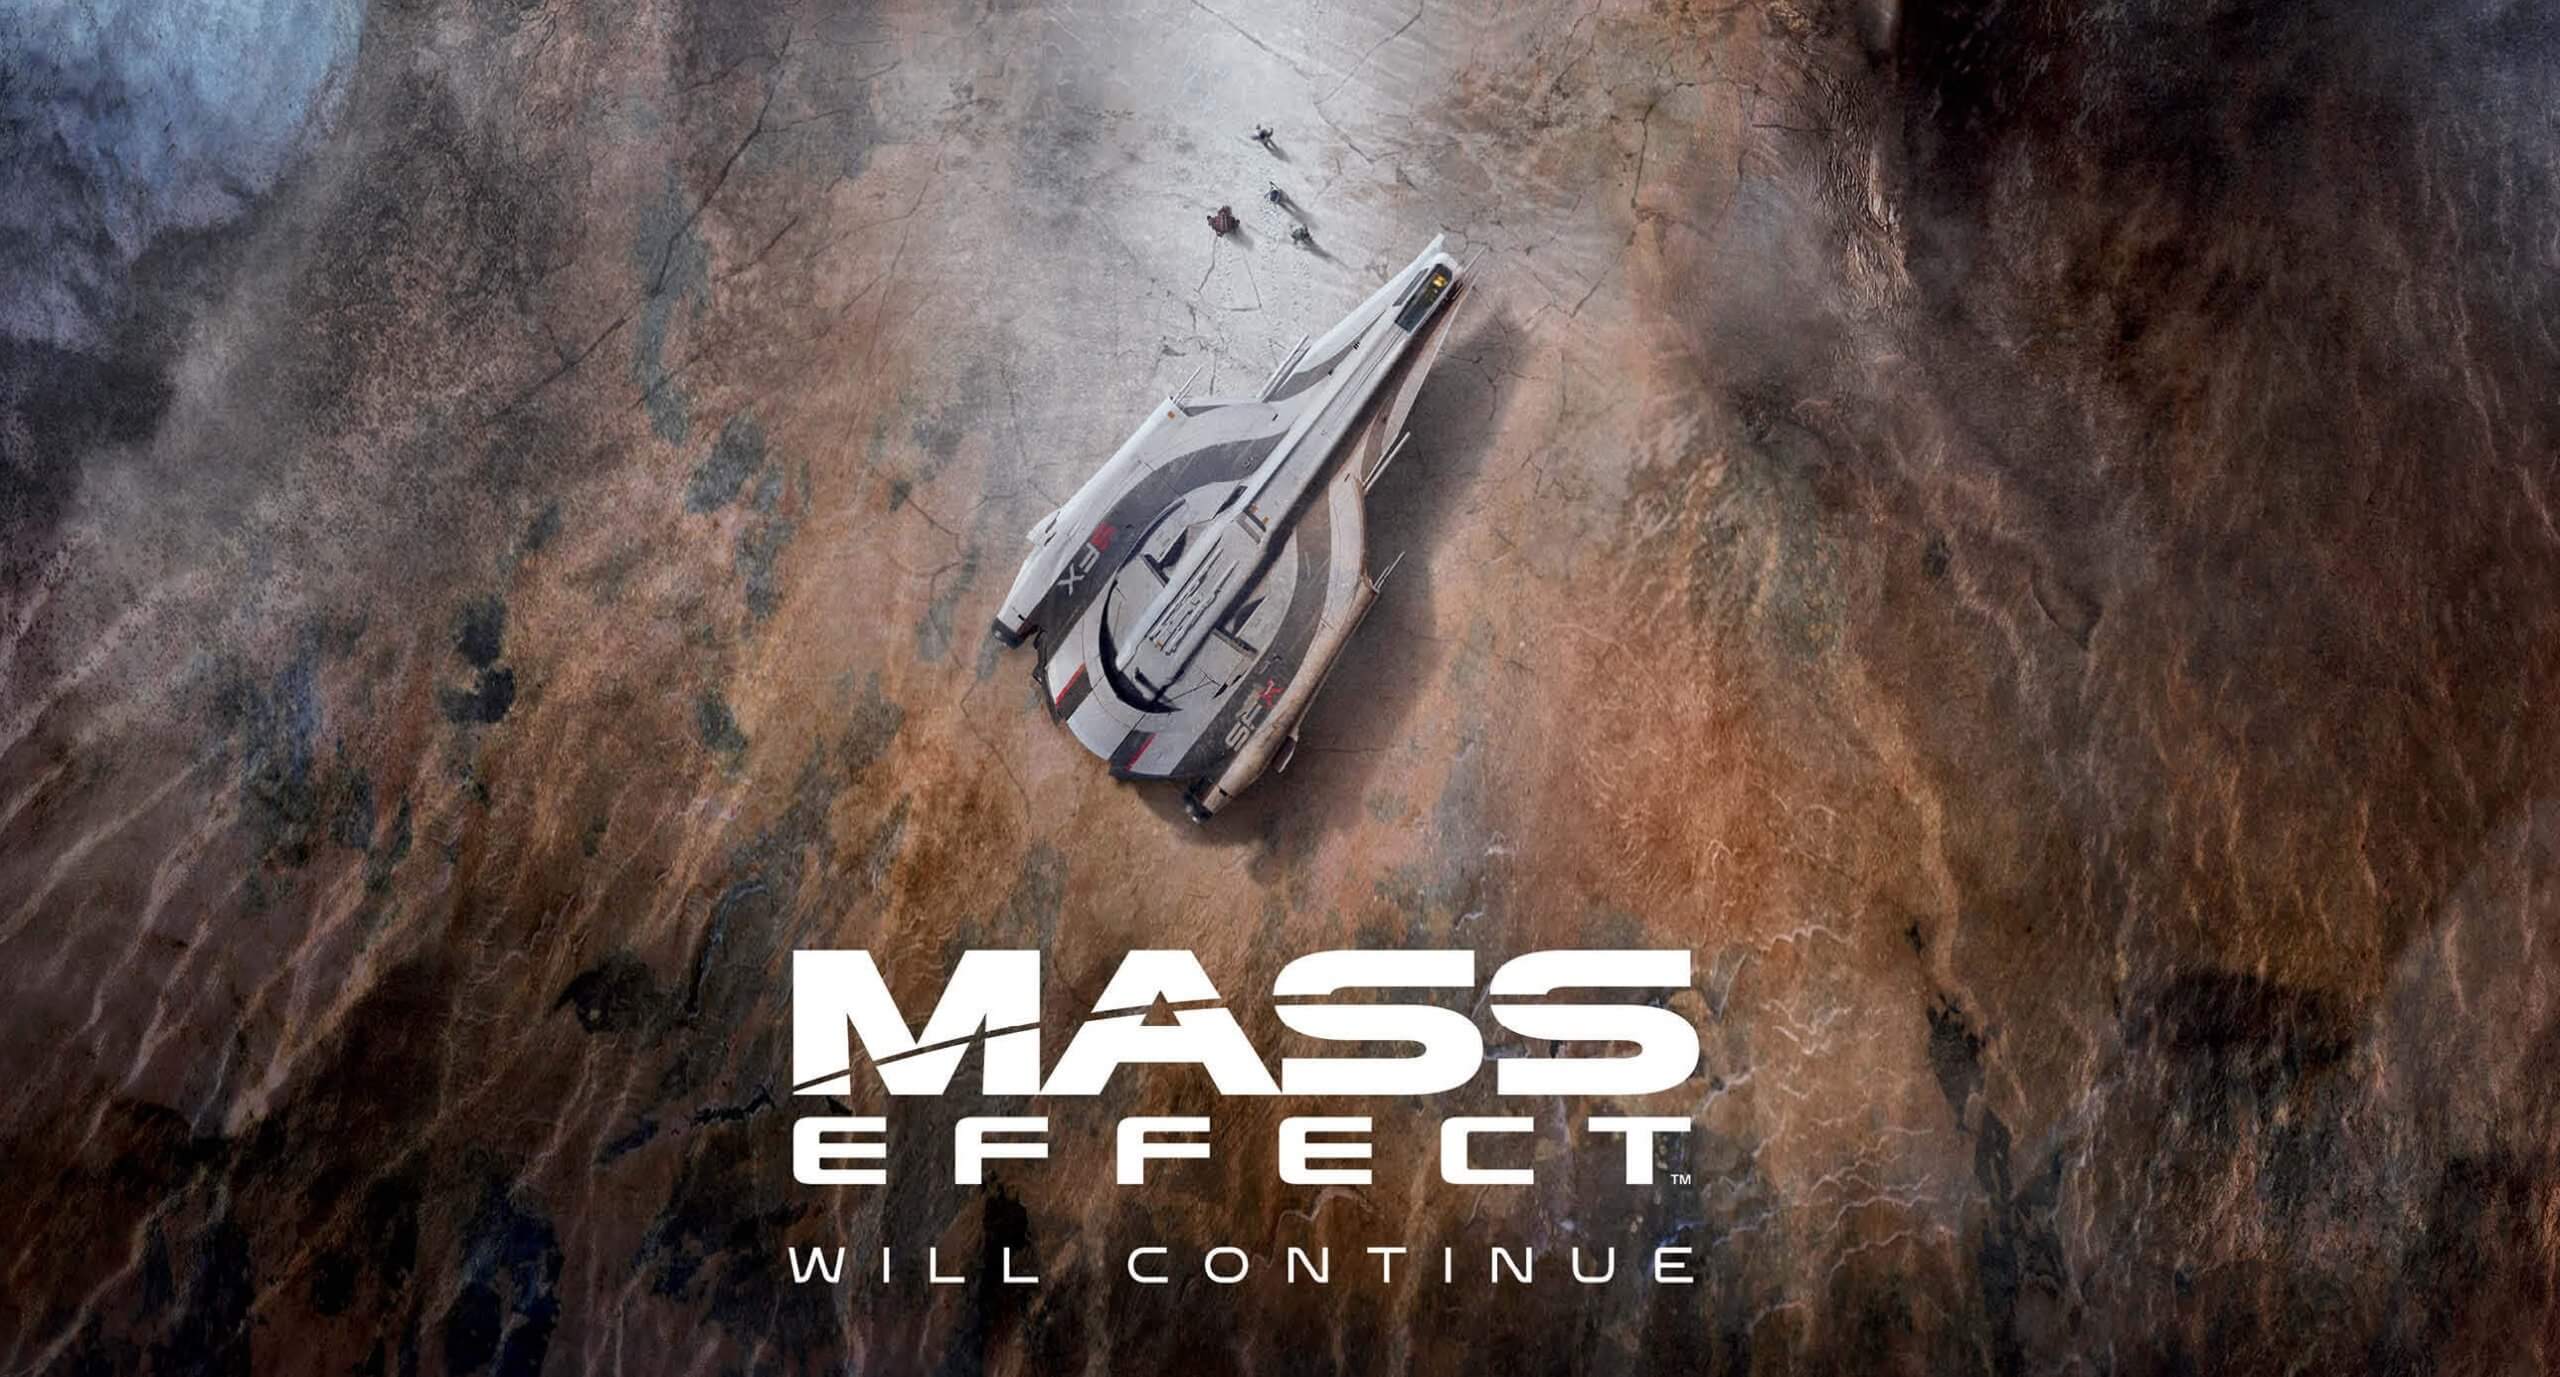 Mass Effect 4 no ha confirmado el regreso de Shepard